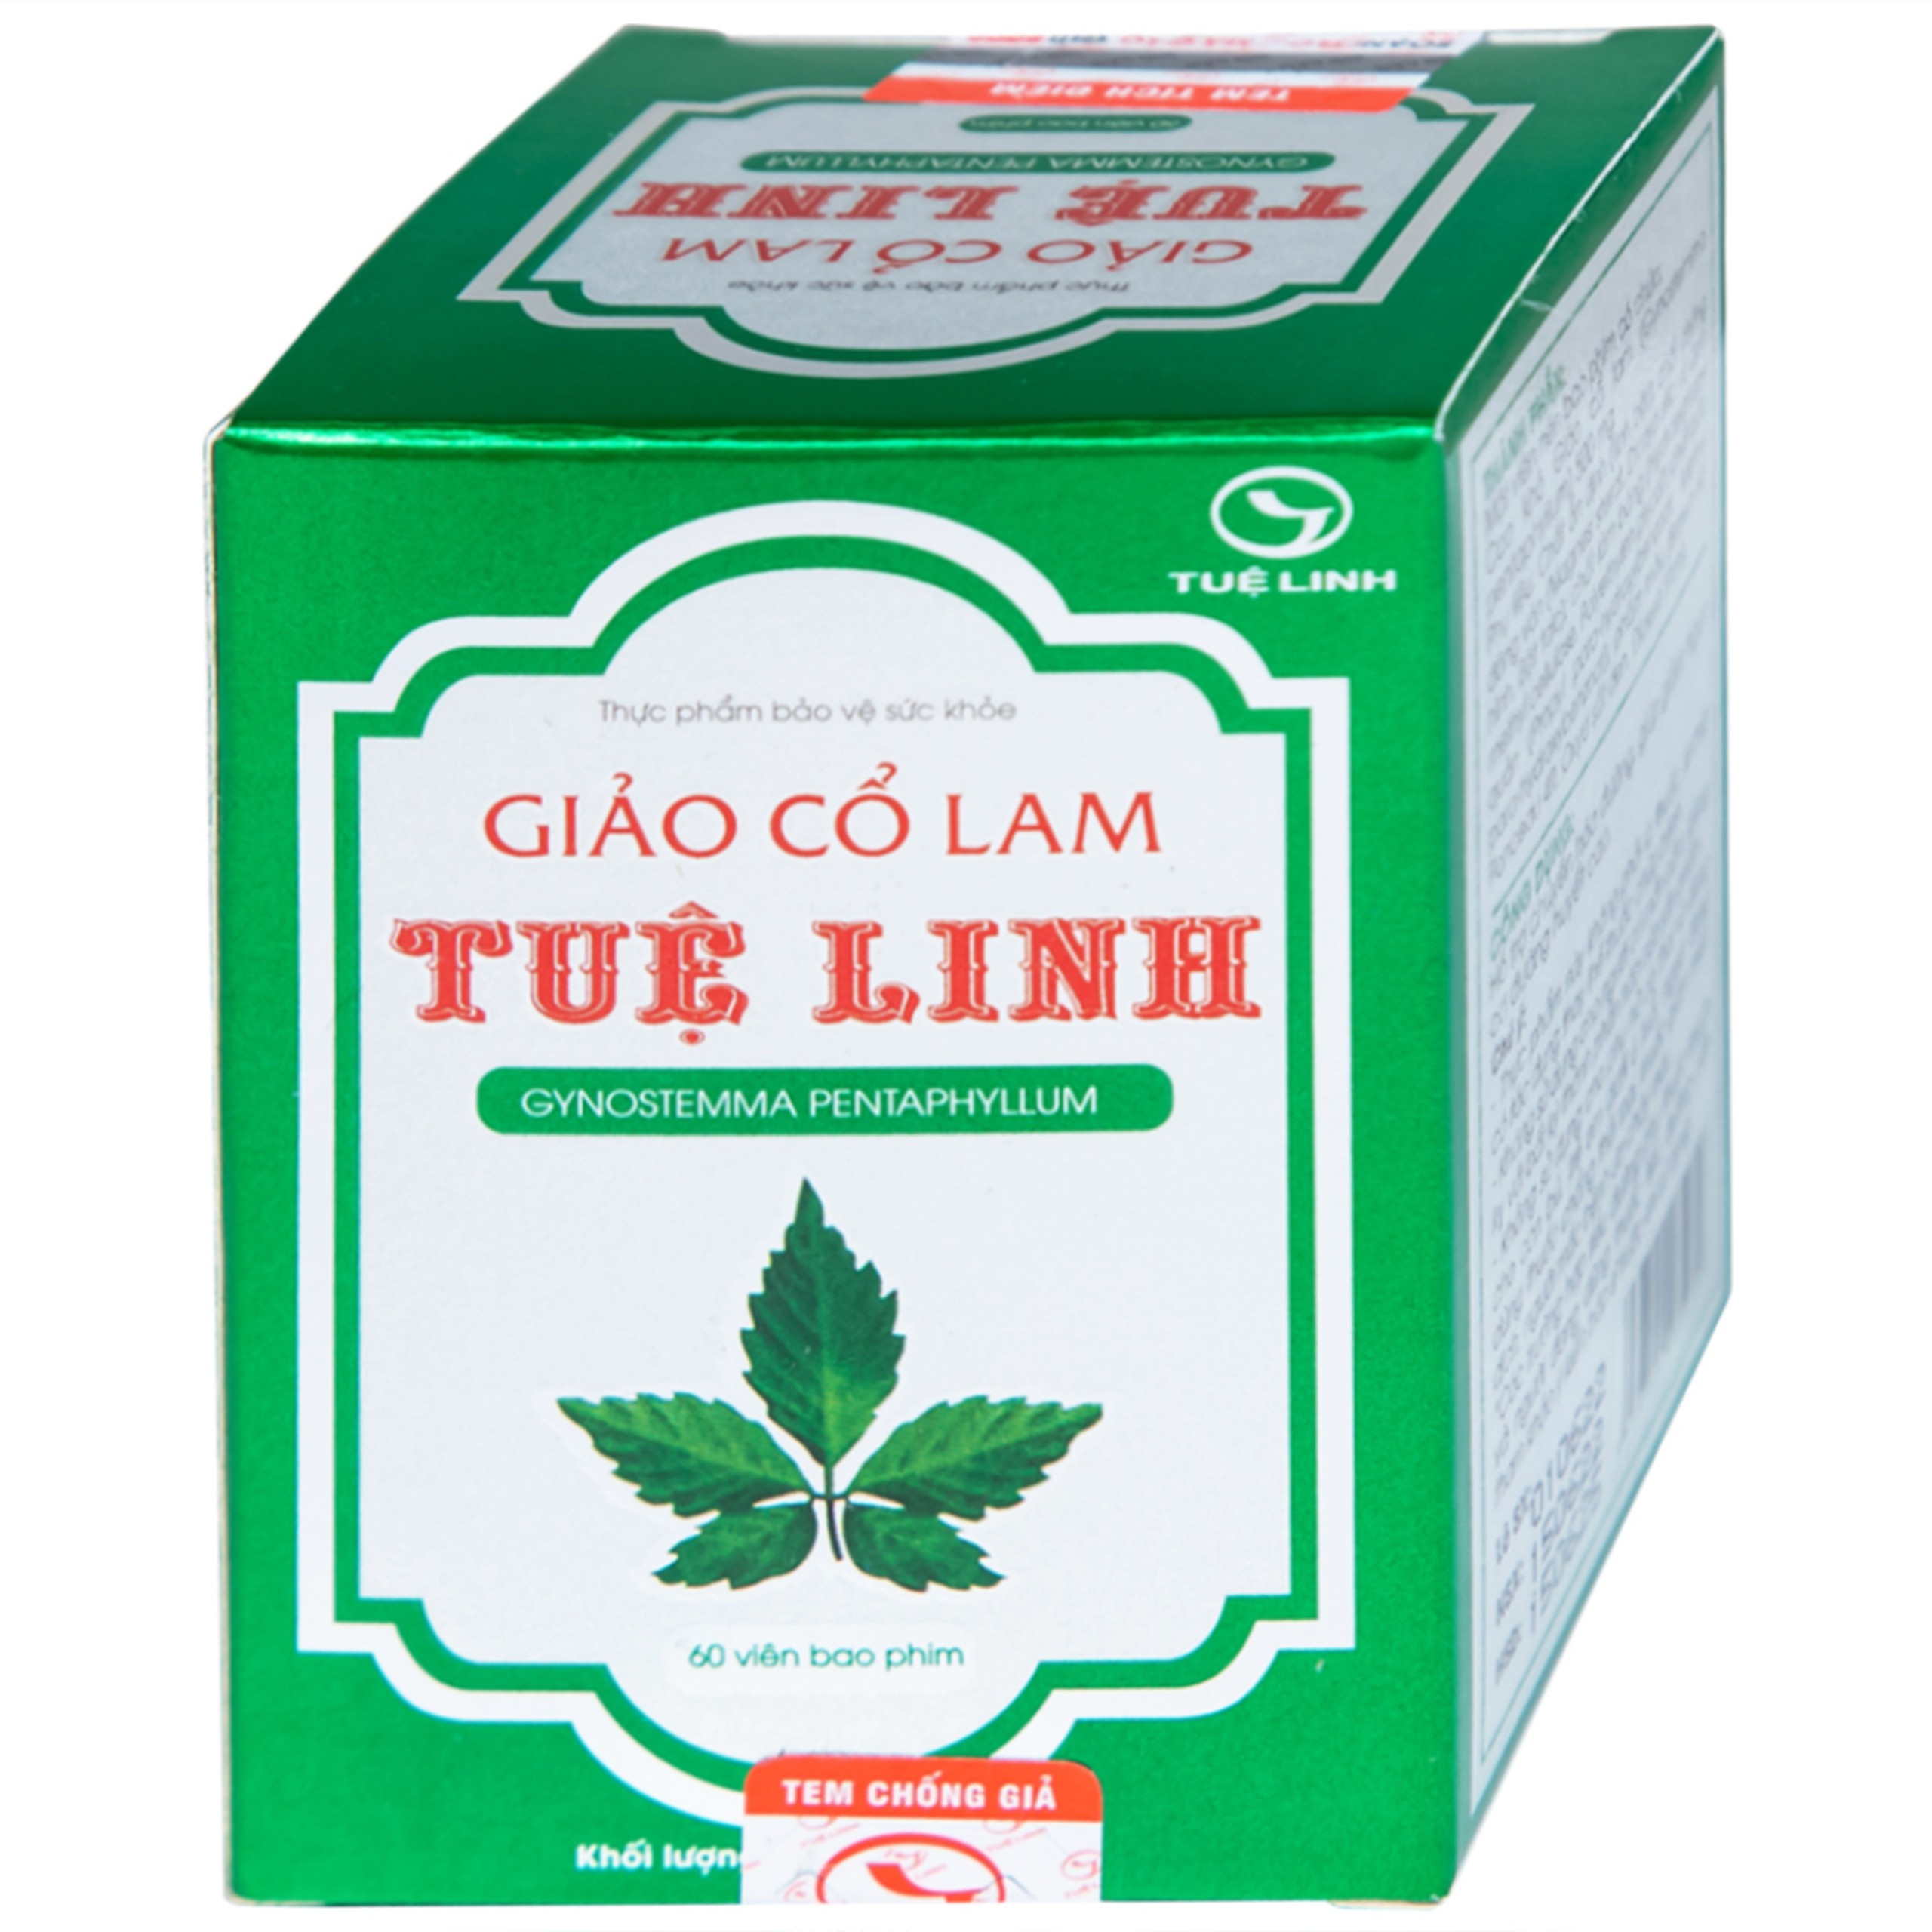 Viên uống Giảo Cổ Lam Tuệ Linh hỗ trợ chuyển hóa đường, giảm nguy cơ đường huyết cao (60 viên)